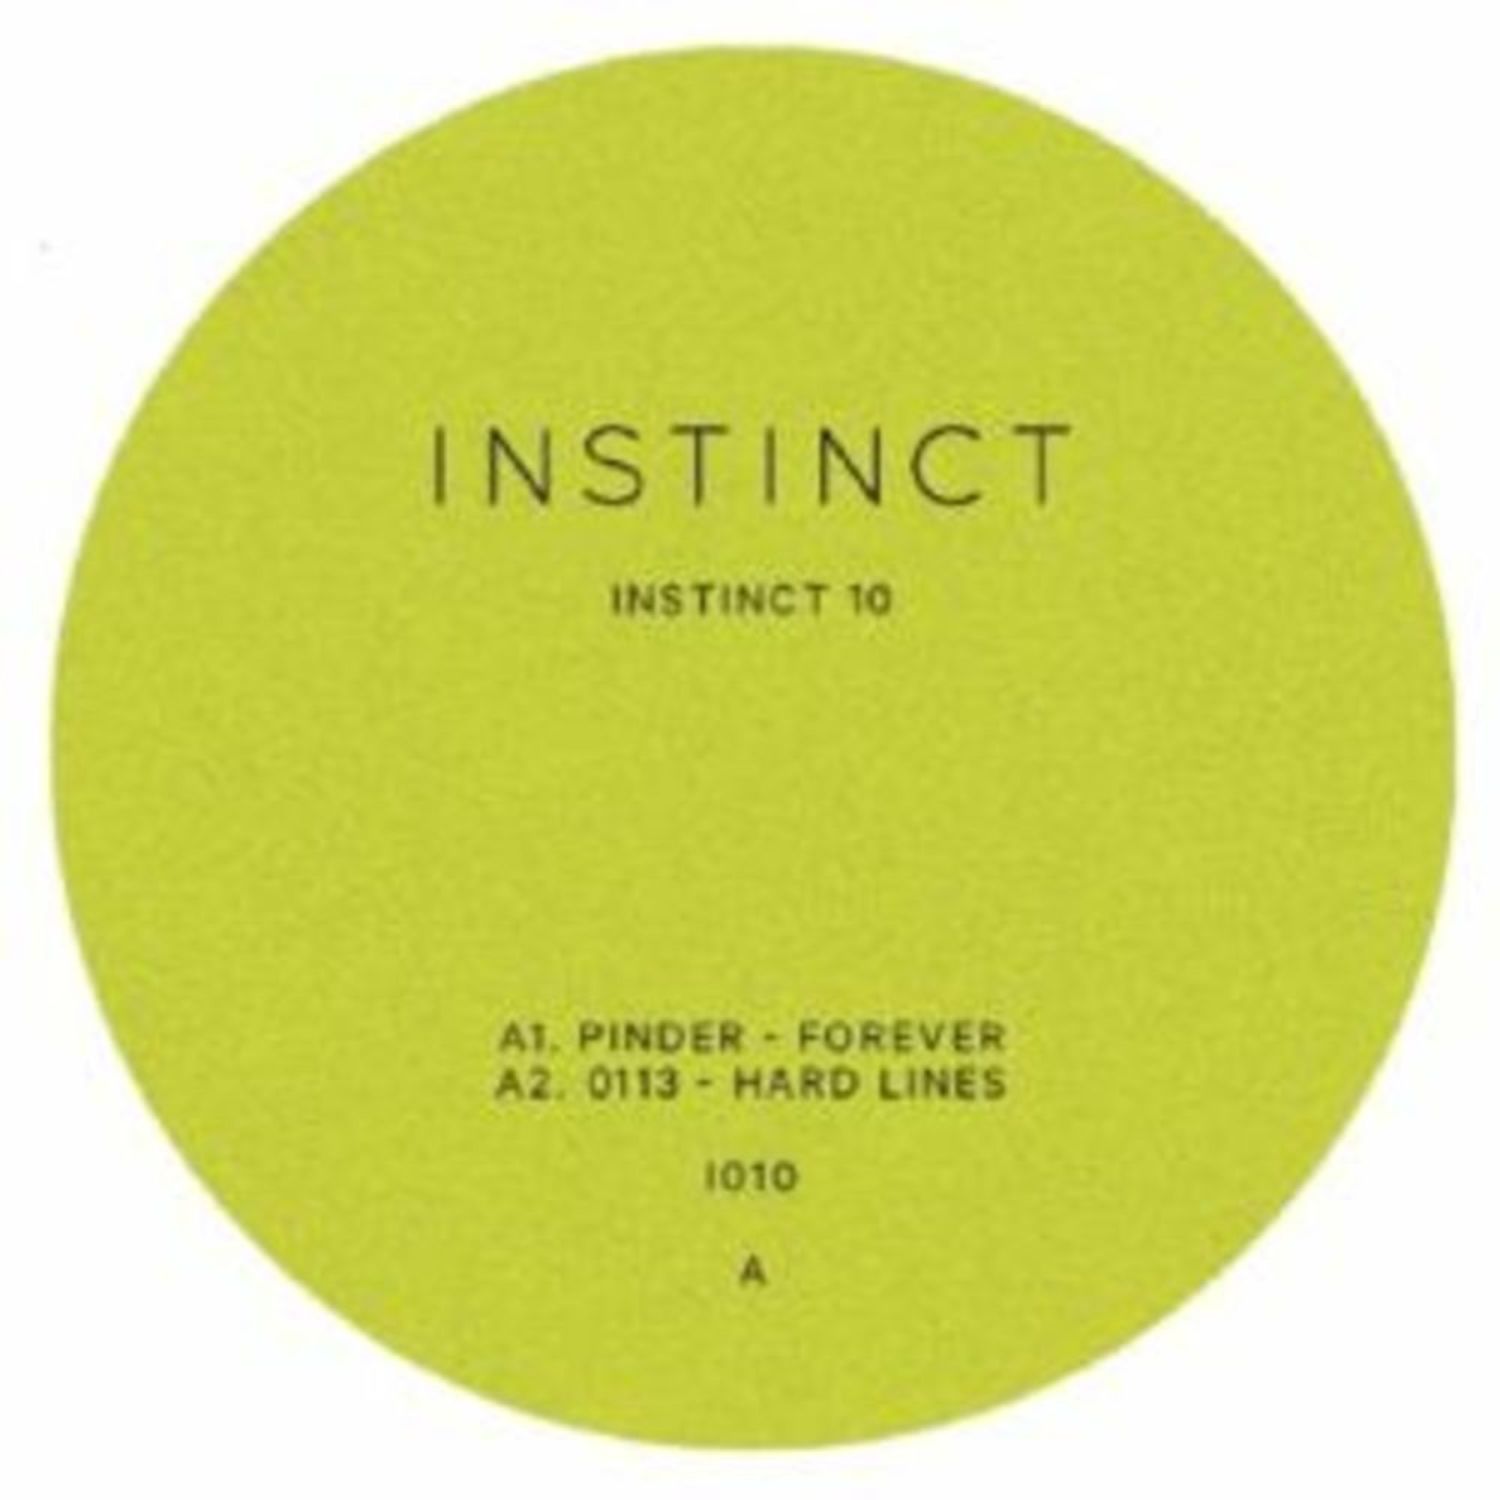 Pinder / 0113 / Zac Stanton / Holloway - INSTINCT 